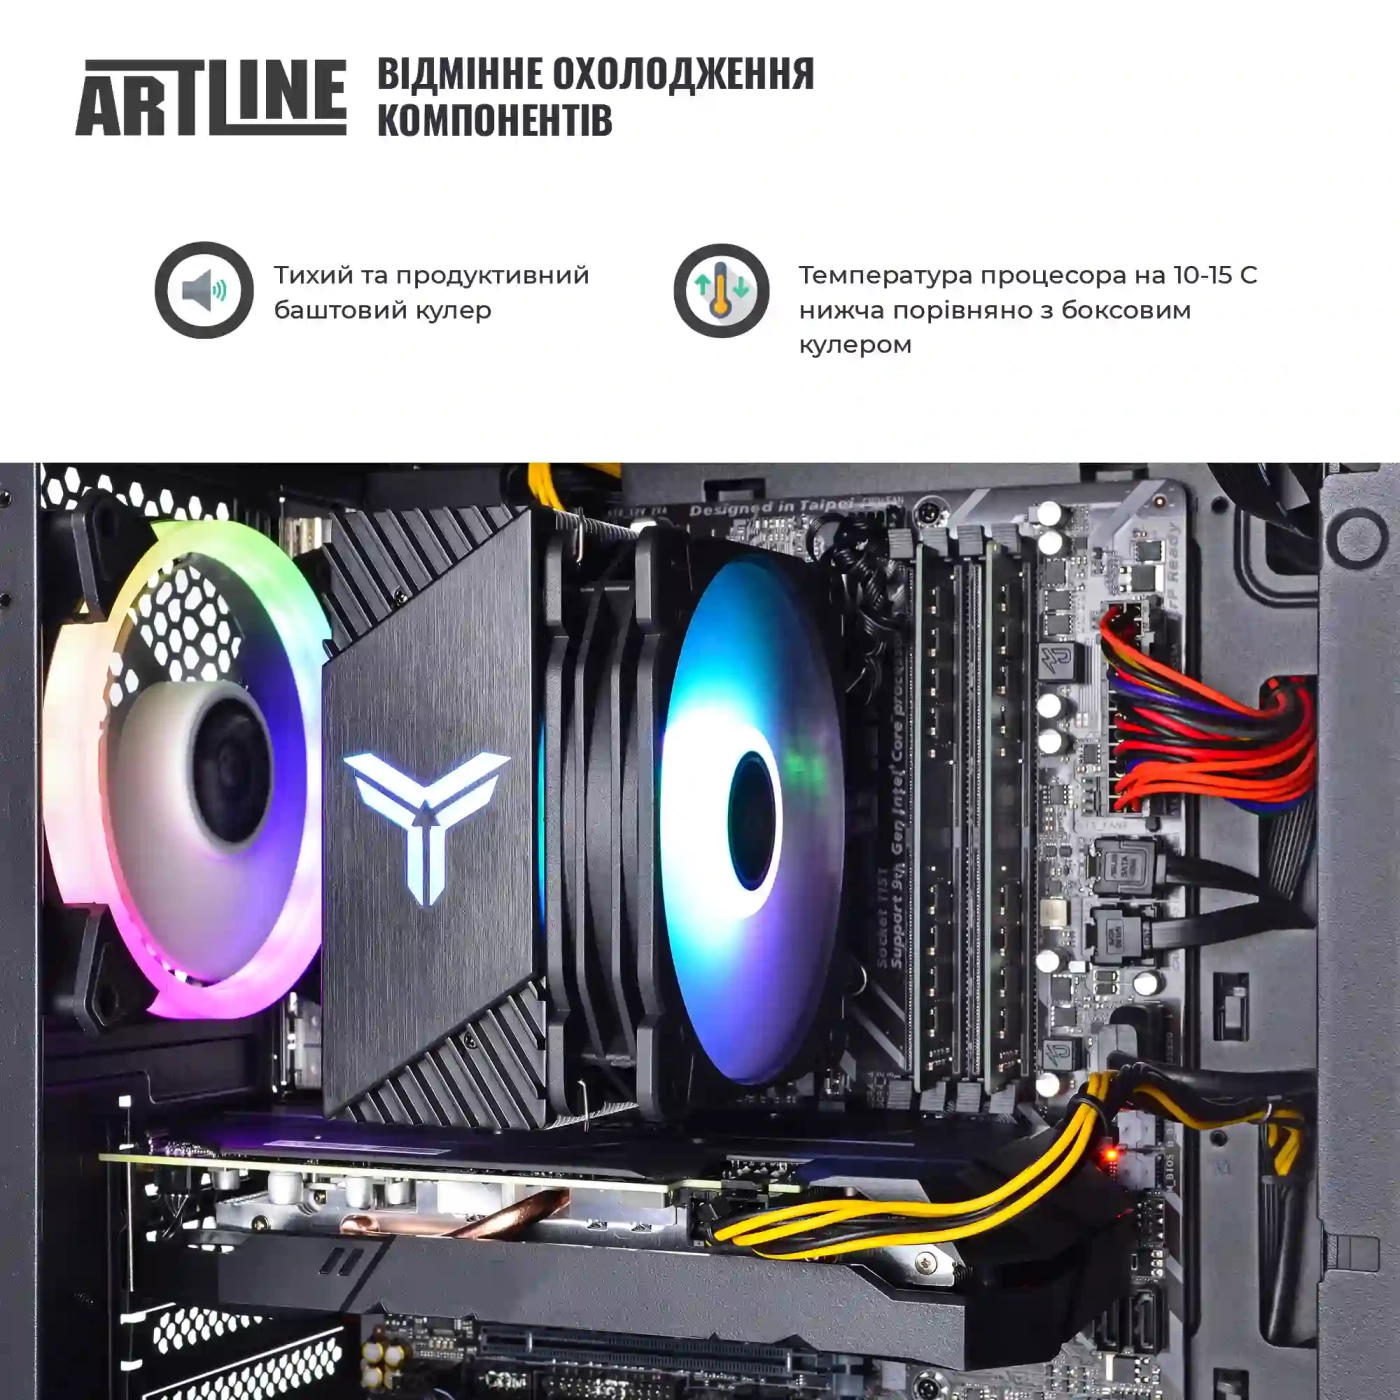 Купить Компьютер ARTLINE Gaming X39v74 - фото 3